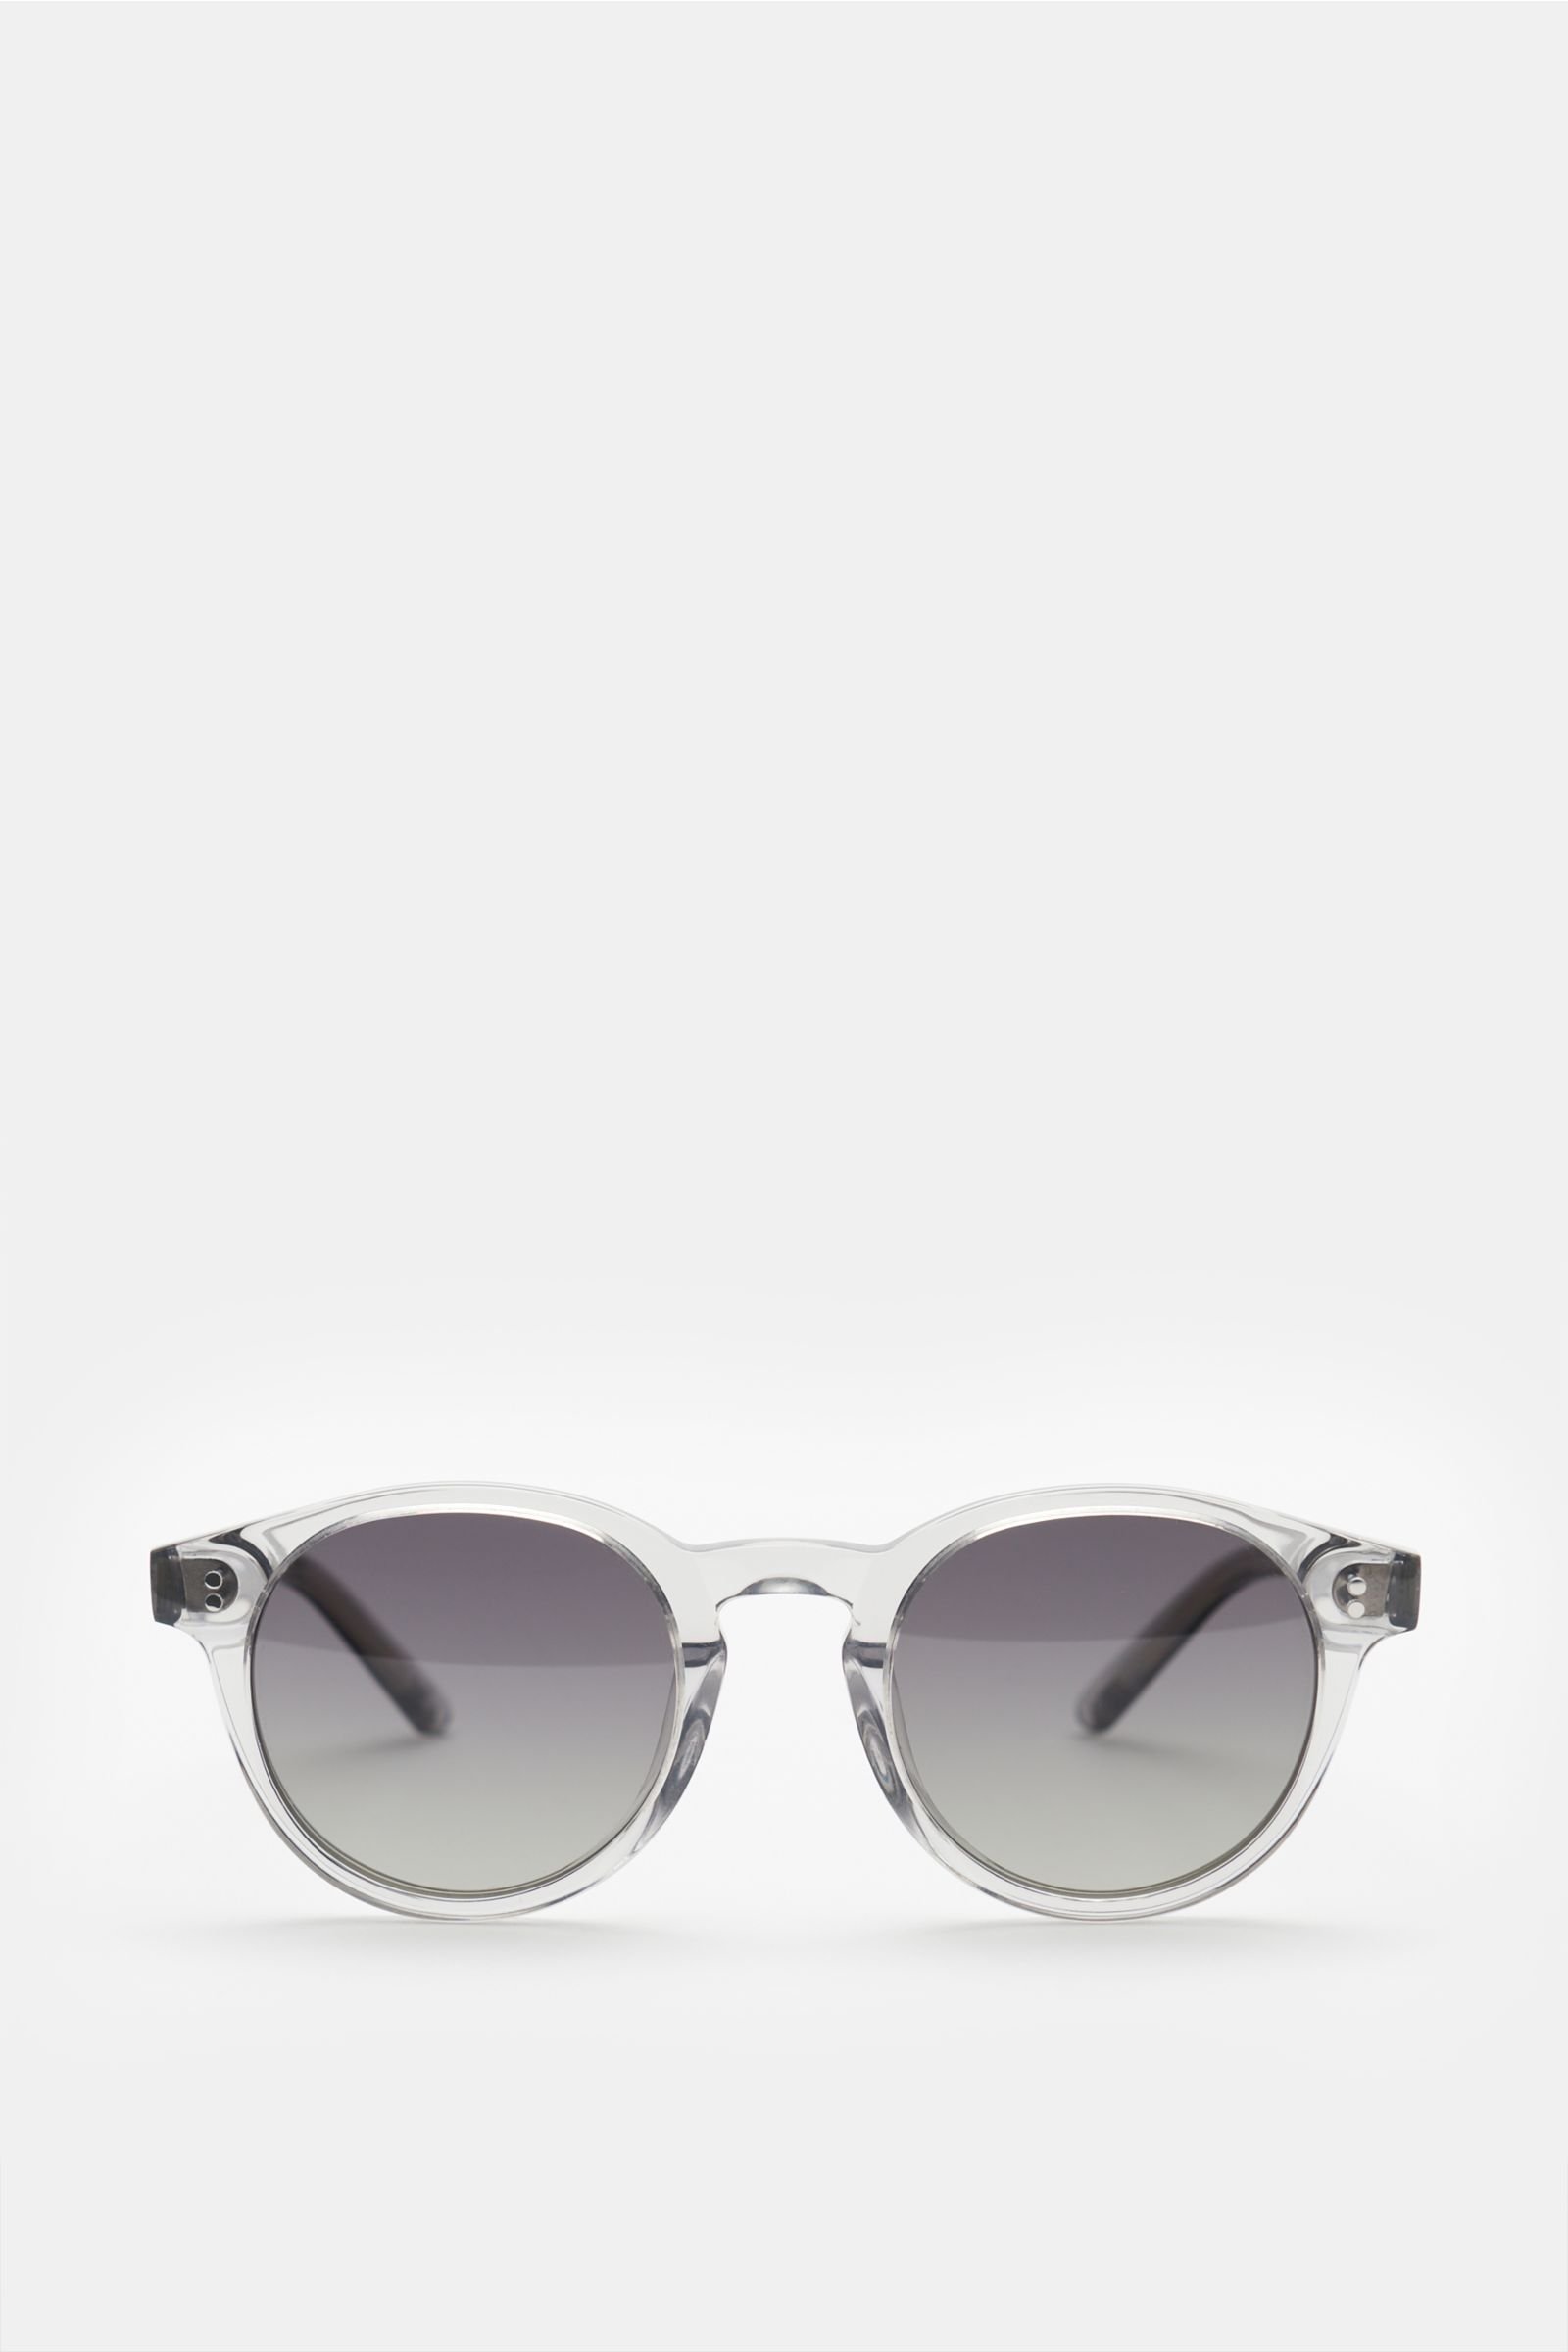 Sonnenbrille '03' grau/dunkelgrau